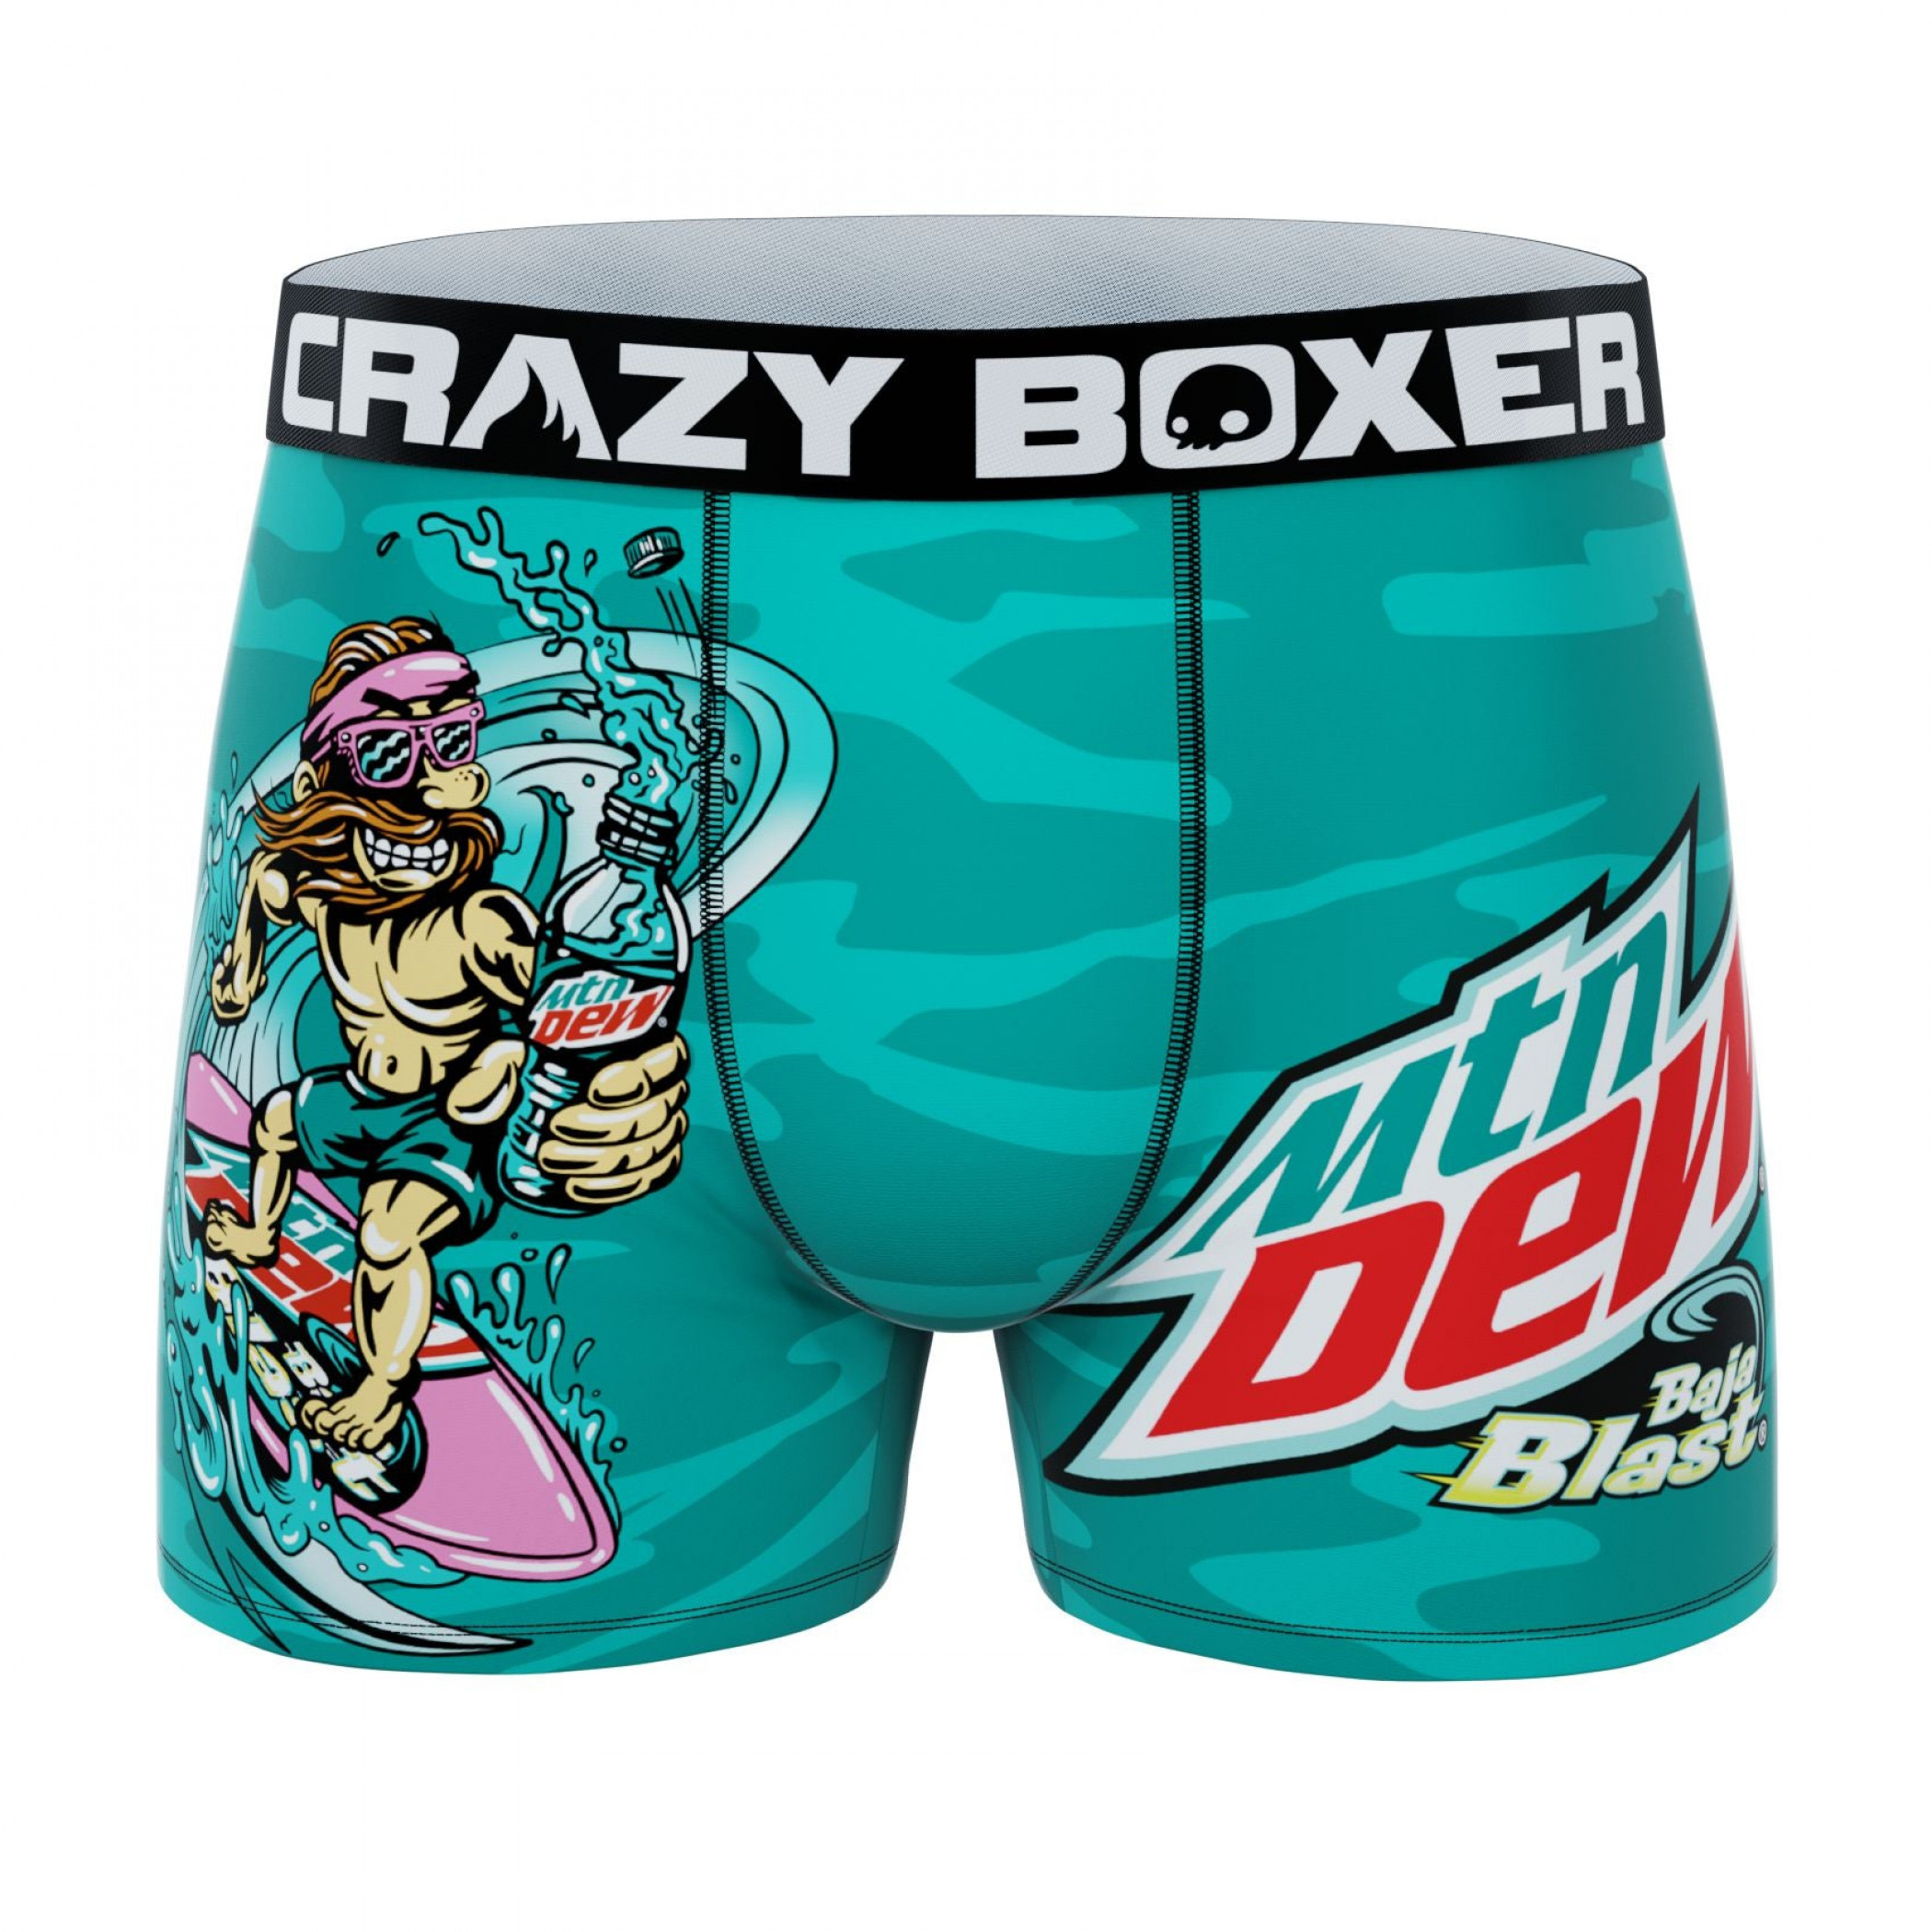 Crazy Boxers Disney Monsters Inc Purple Men's Boxer Briefs